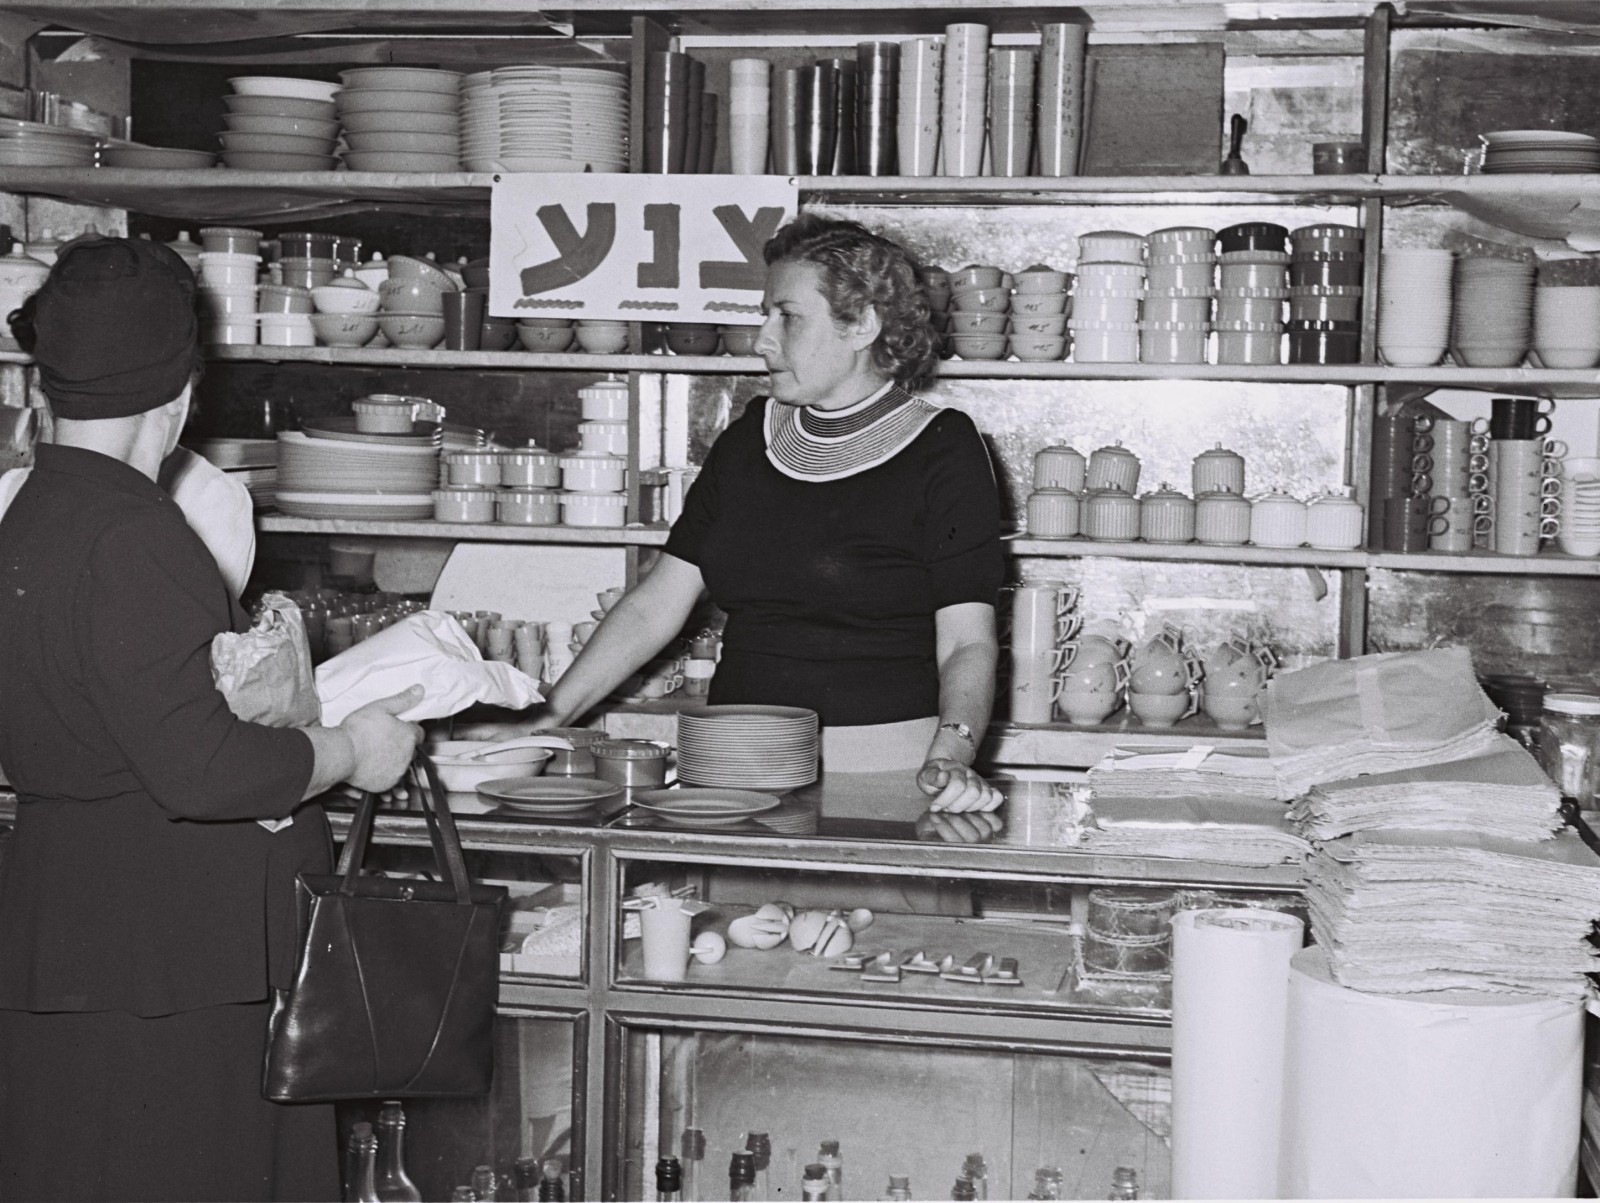 כלי אוכל וכלי בית, תחת שלט ה"צנע", בחנות לאביזרי מטבח בתל אביב (צילום: פריץ כהן / לע״מ).